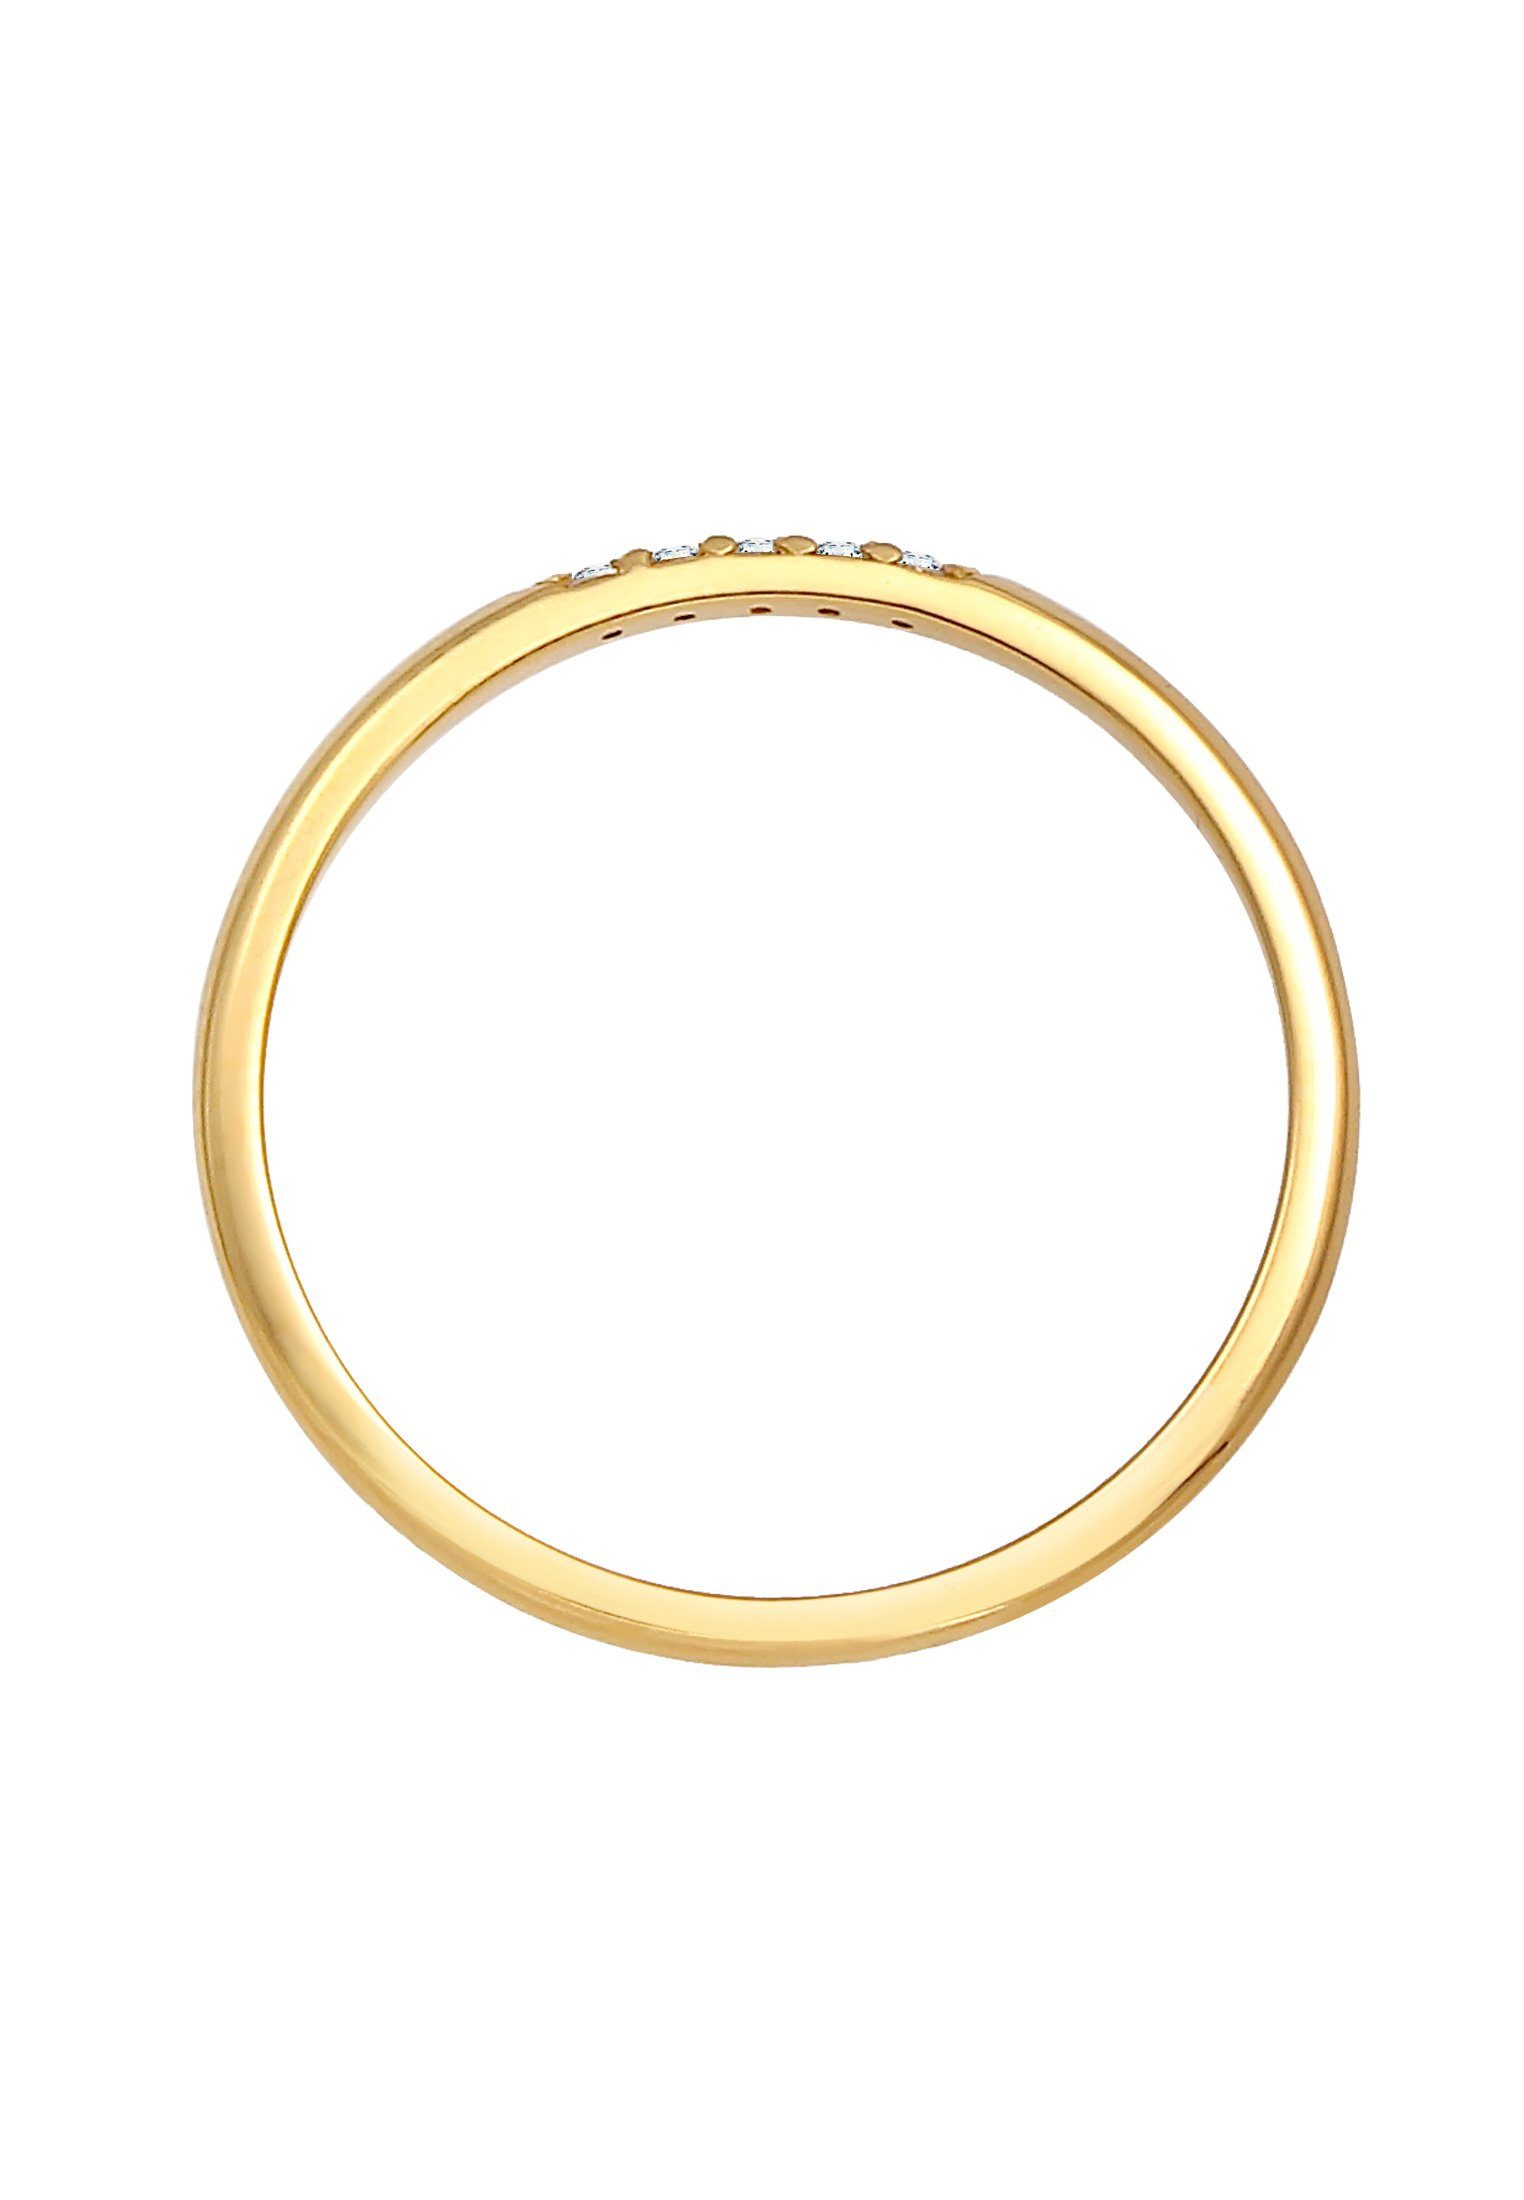 Damen Schmuck Elli DIAMONDS Diamantring Bandring Verlobung Diamanten Elegant Fein 375 Gold, Microsetting